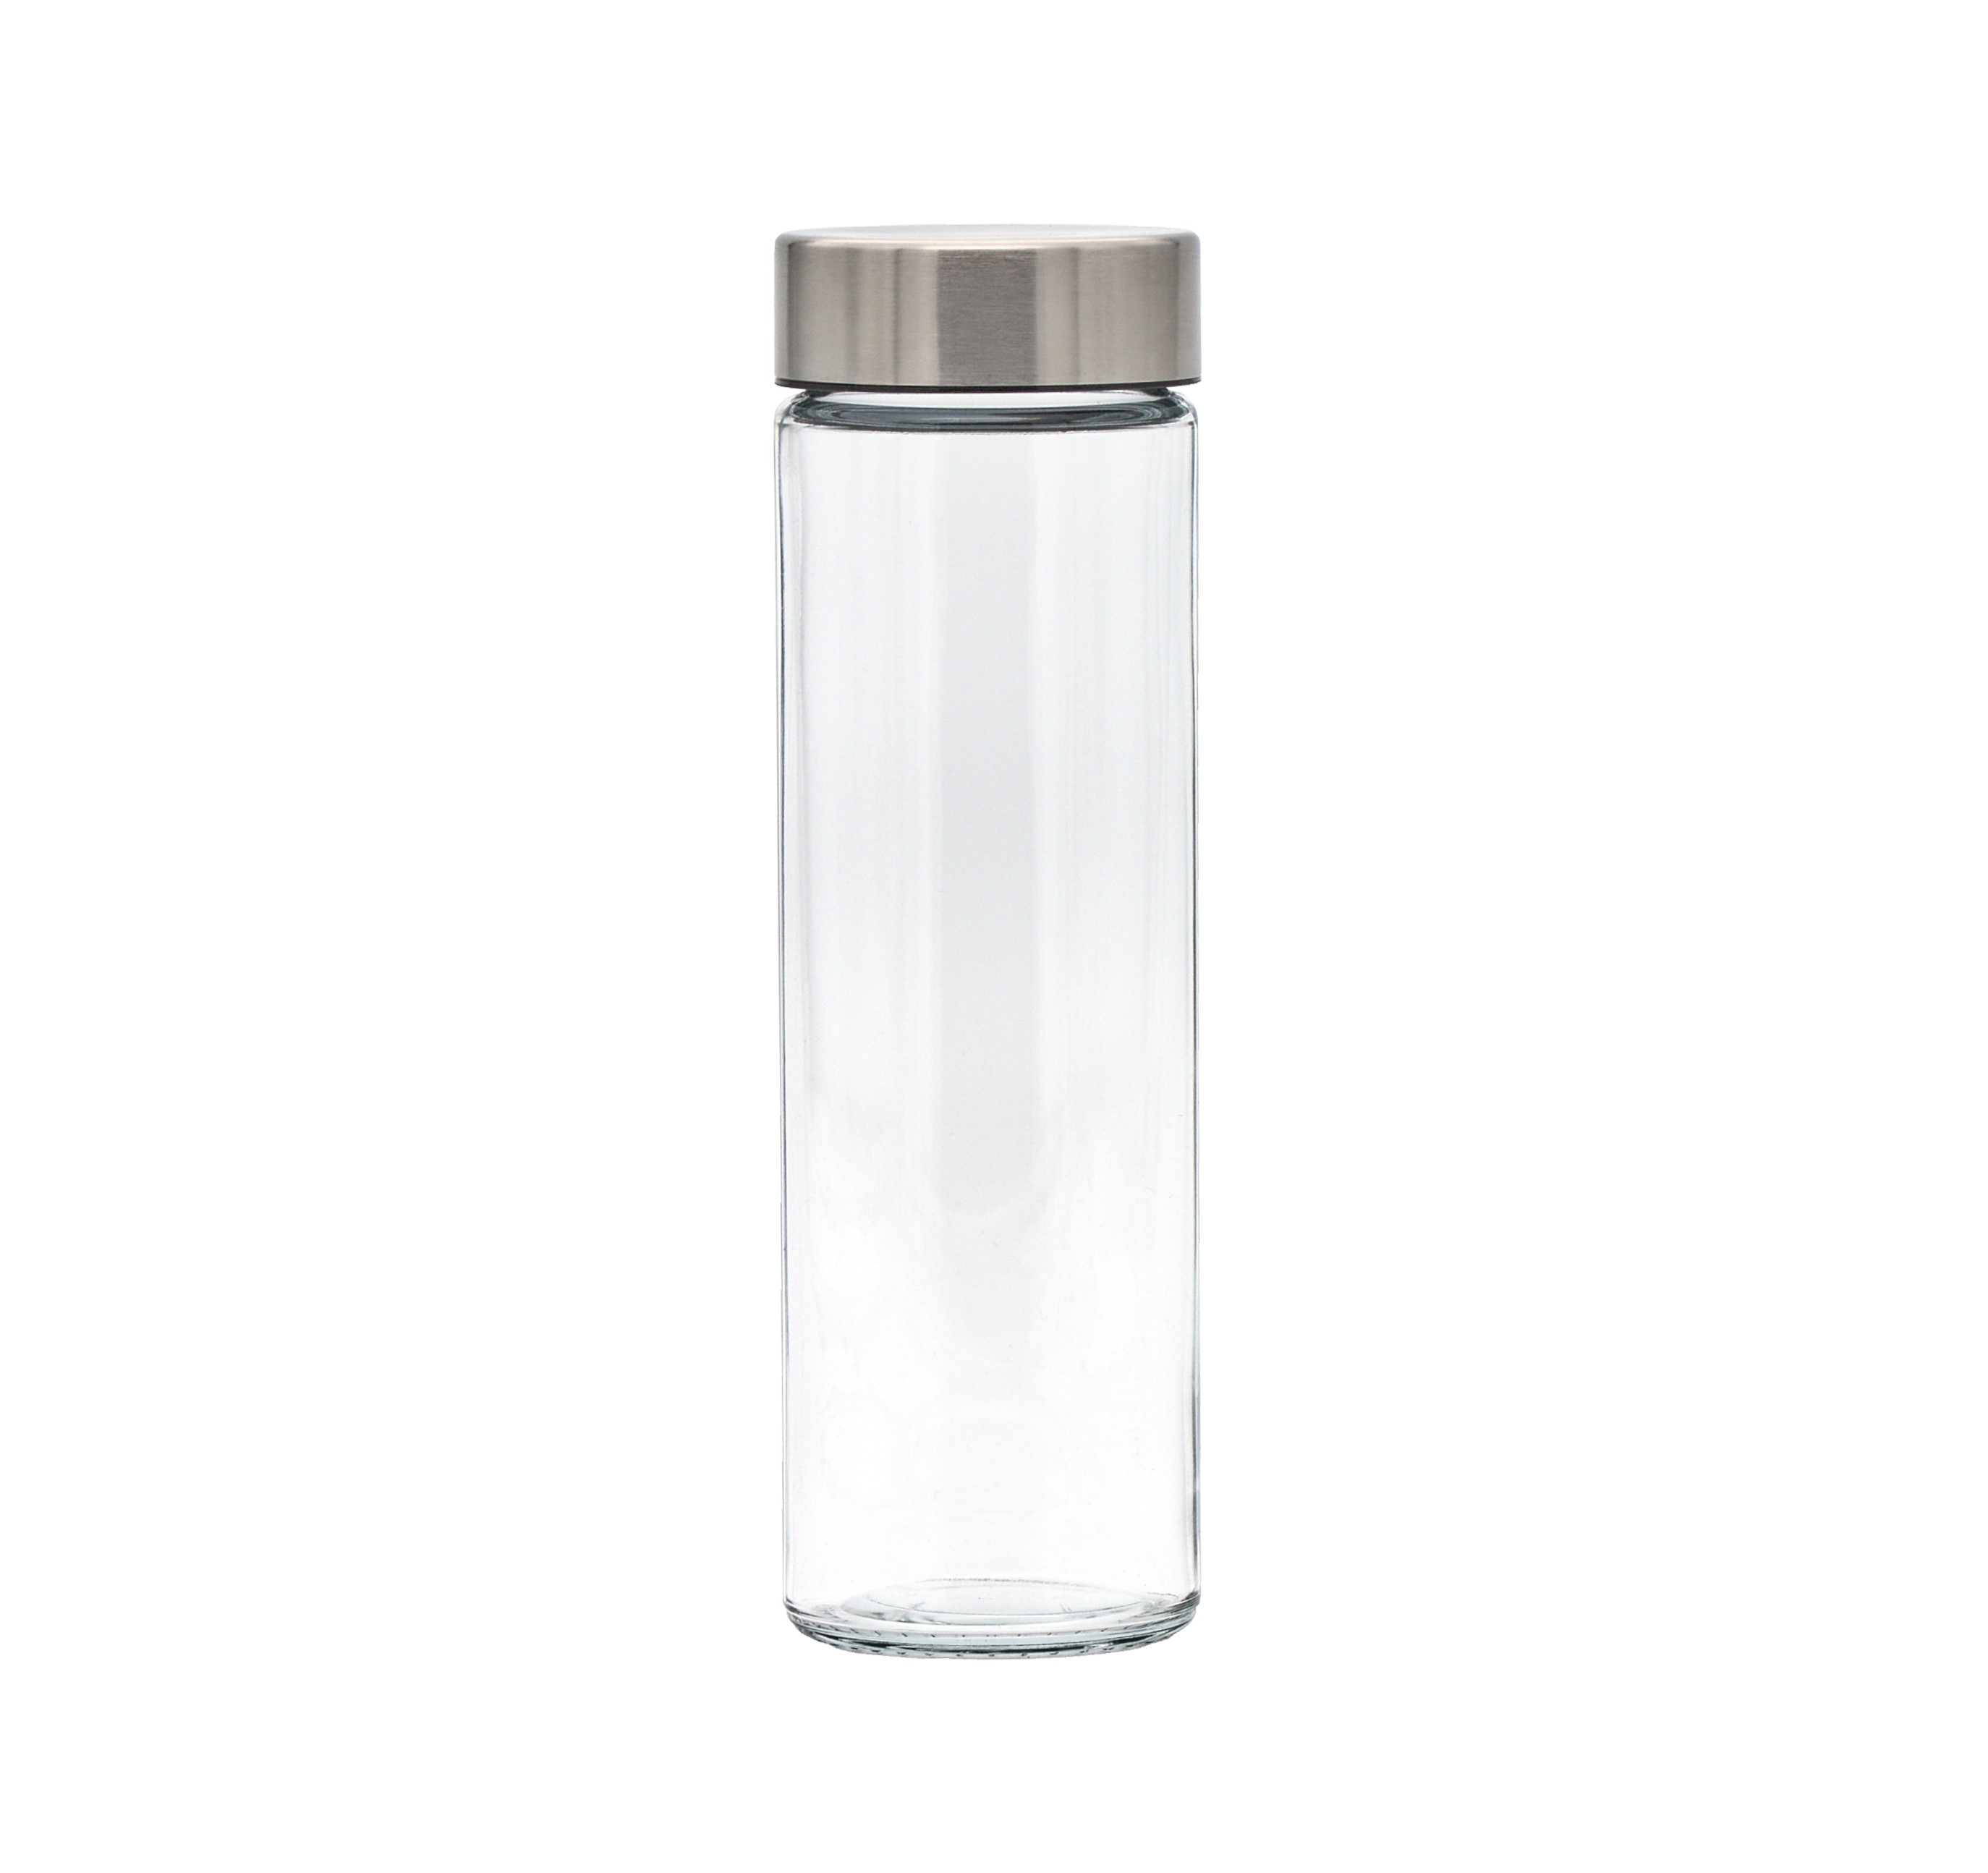 Exklusive SIMAX Trinkflasche aus Borosilikatglas in einfachen zylindrischen Design ohne Siebeinsatz und einer Füllmenge von 500 ml